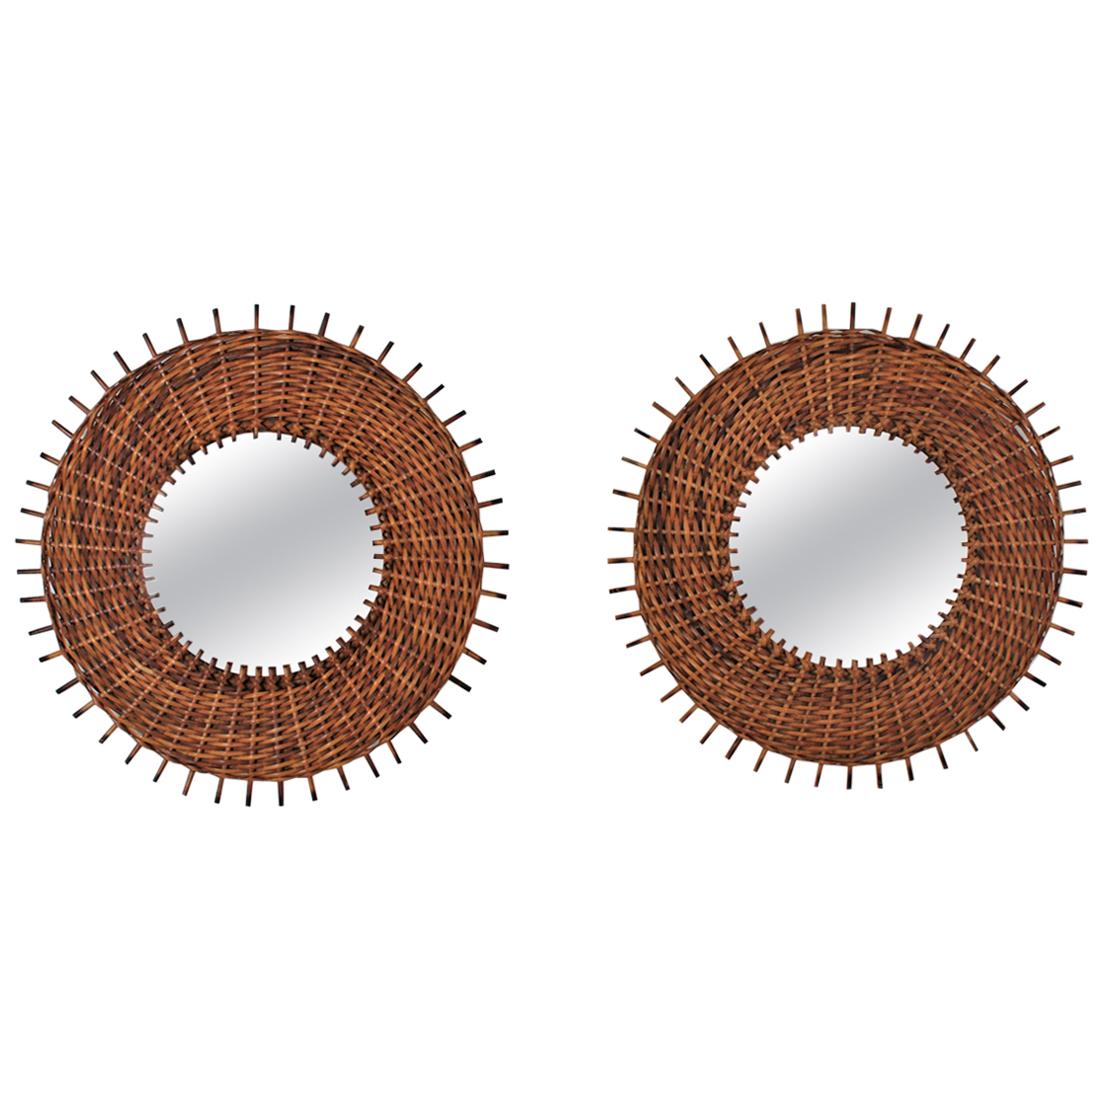 Pair of Spanish Hand-Woven Rattan Wicker Sunburst Mirrors